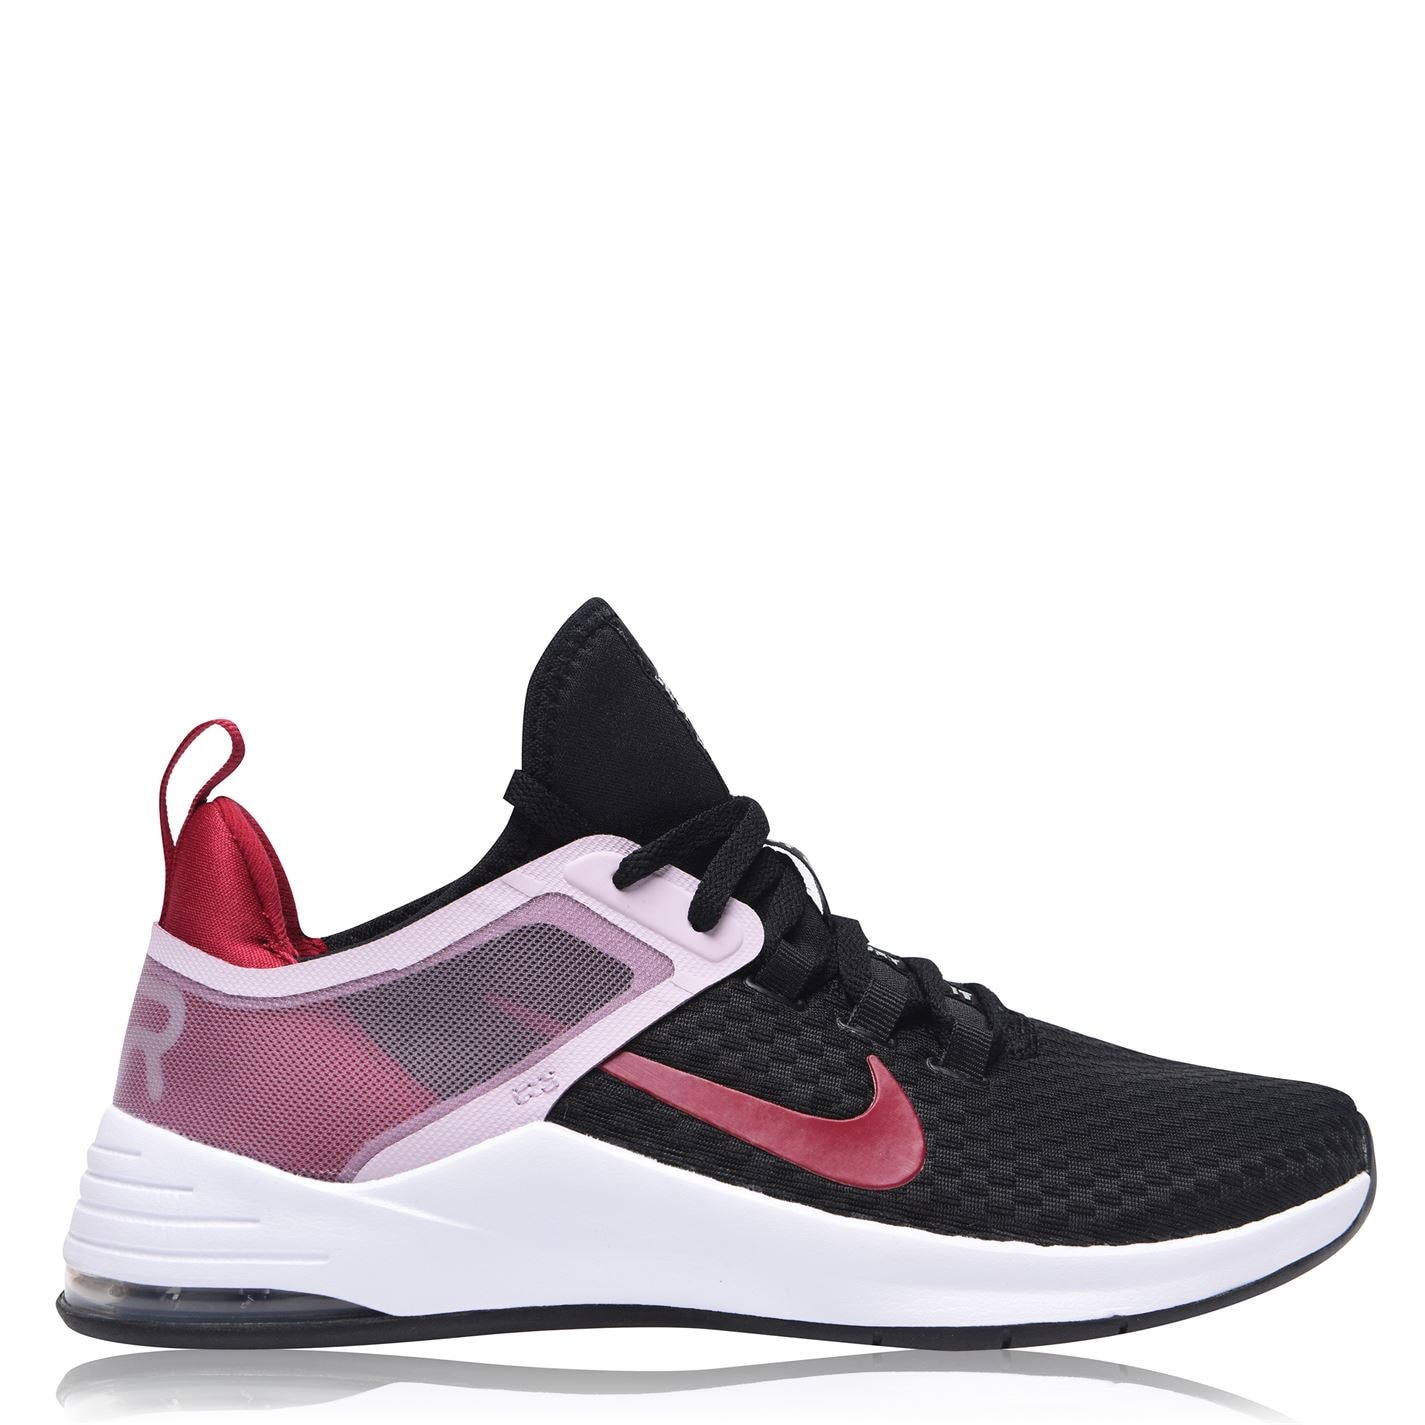 Adidasi sport Nike Air Bella 2 pentru Femei negru rosu lila